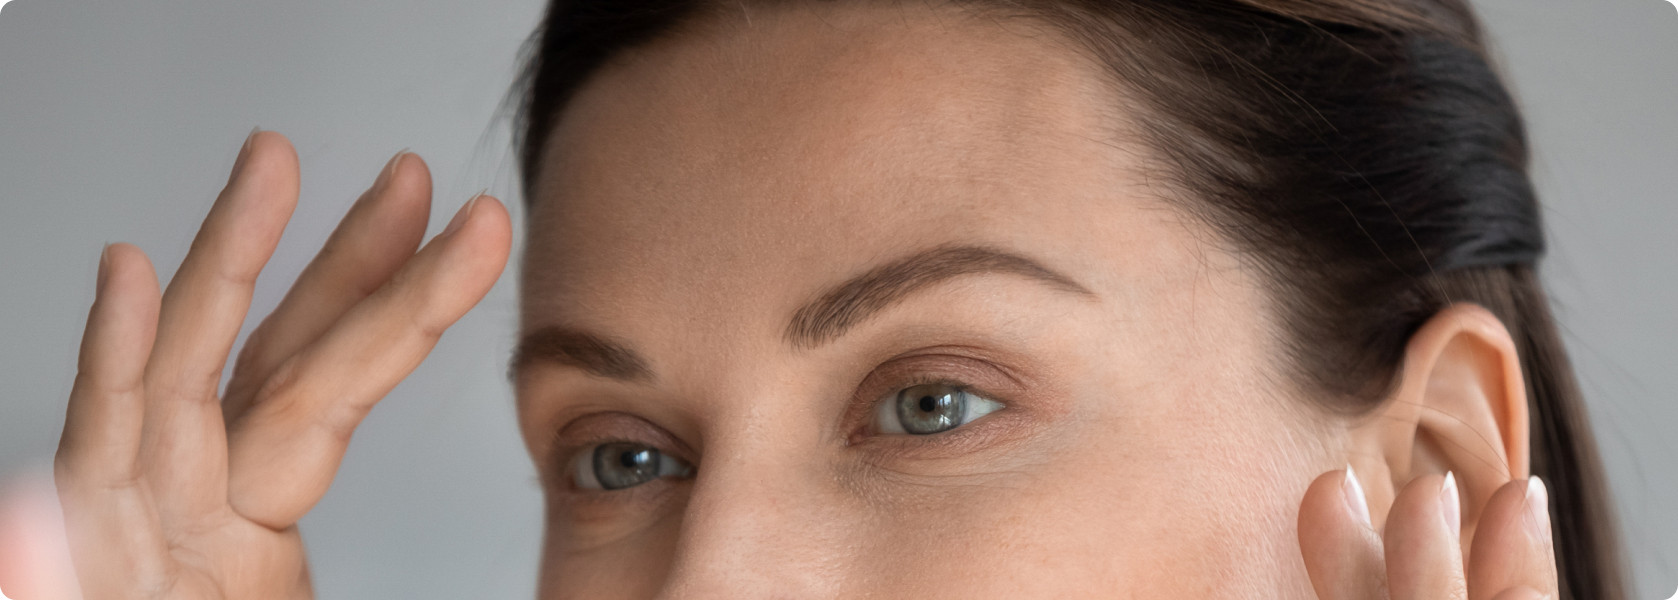 Augenlidstraffung - Hinterlässt die Augenlidkorrektur Narben?